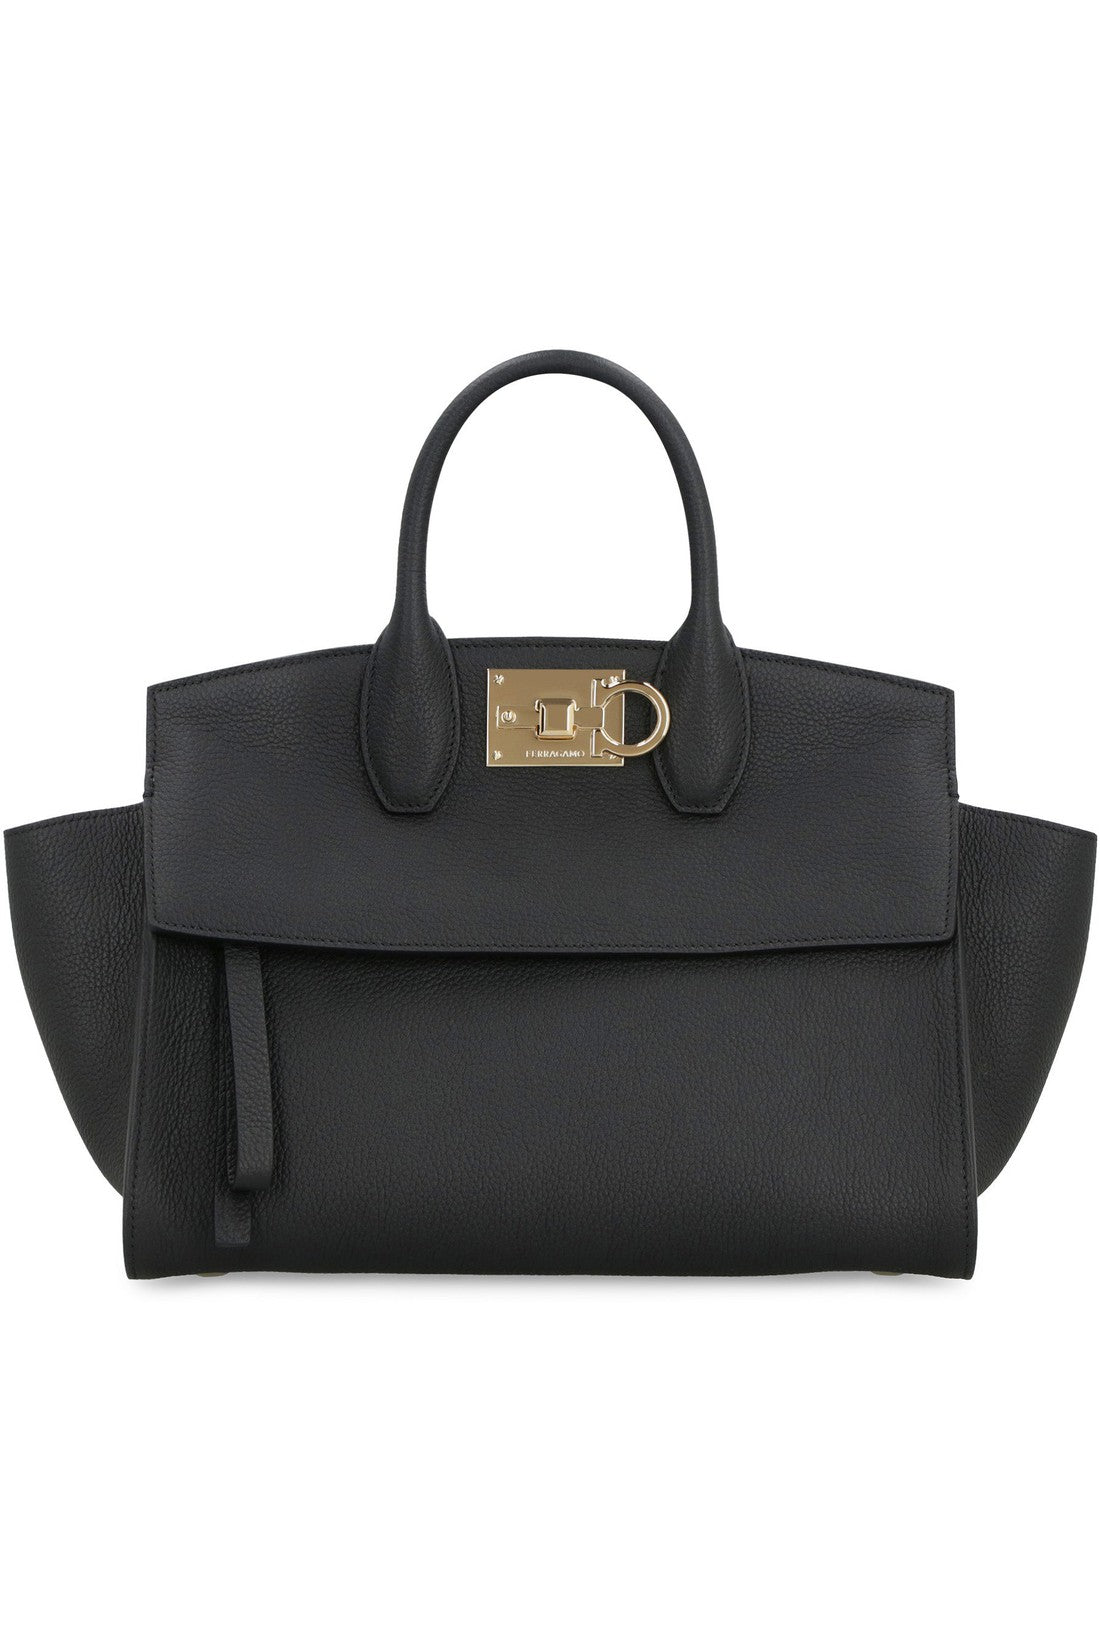 FERRAGAMO-OUTLET-SALE-Studio Soft leather handbag-ARCHIVIST